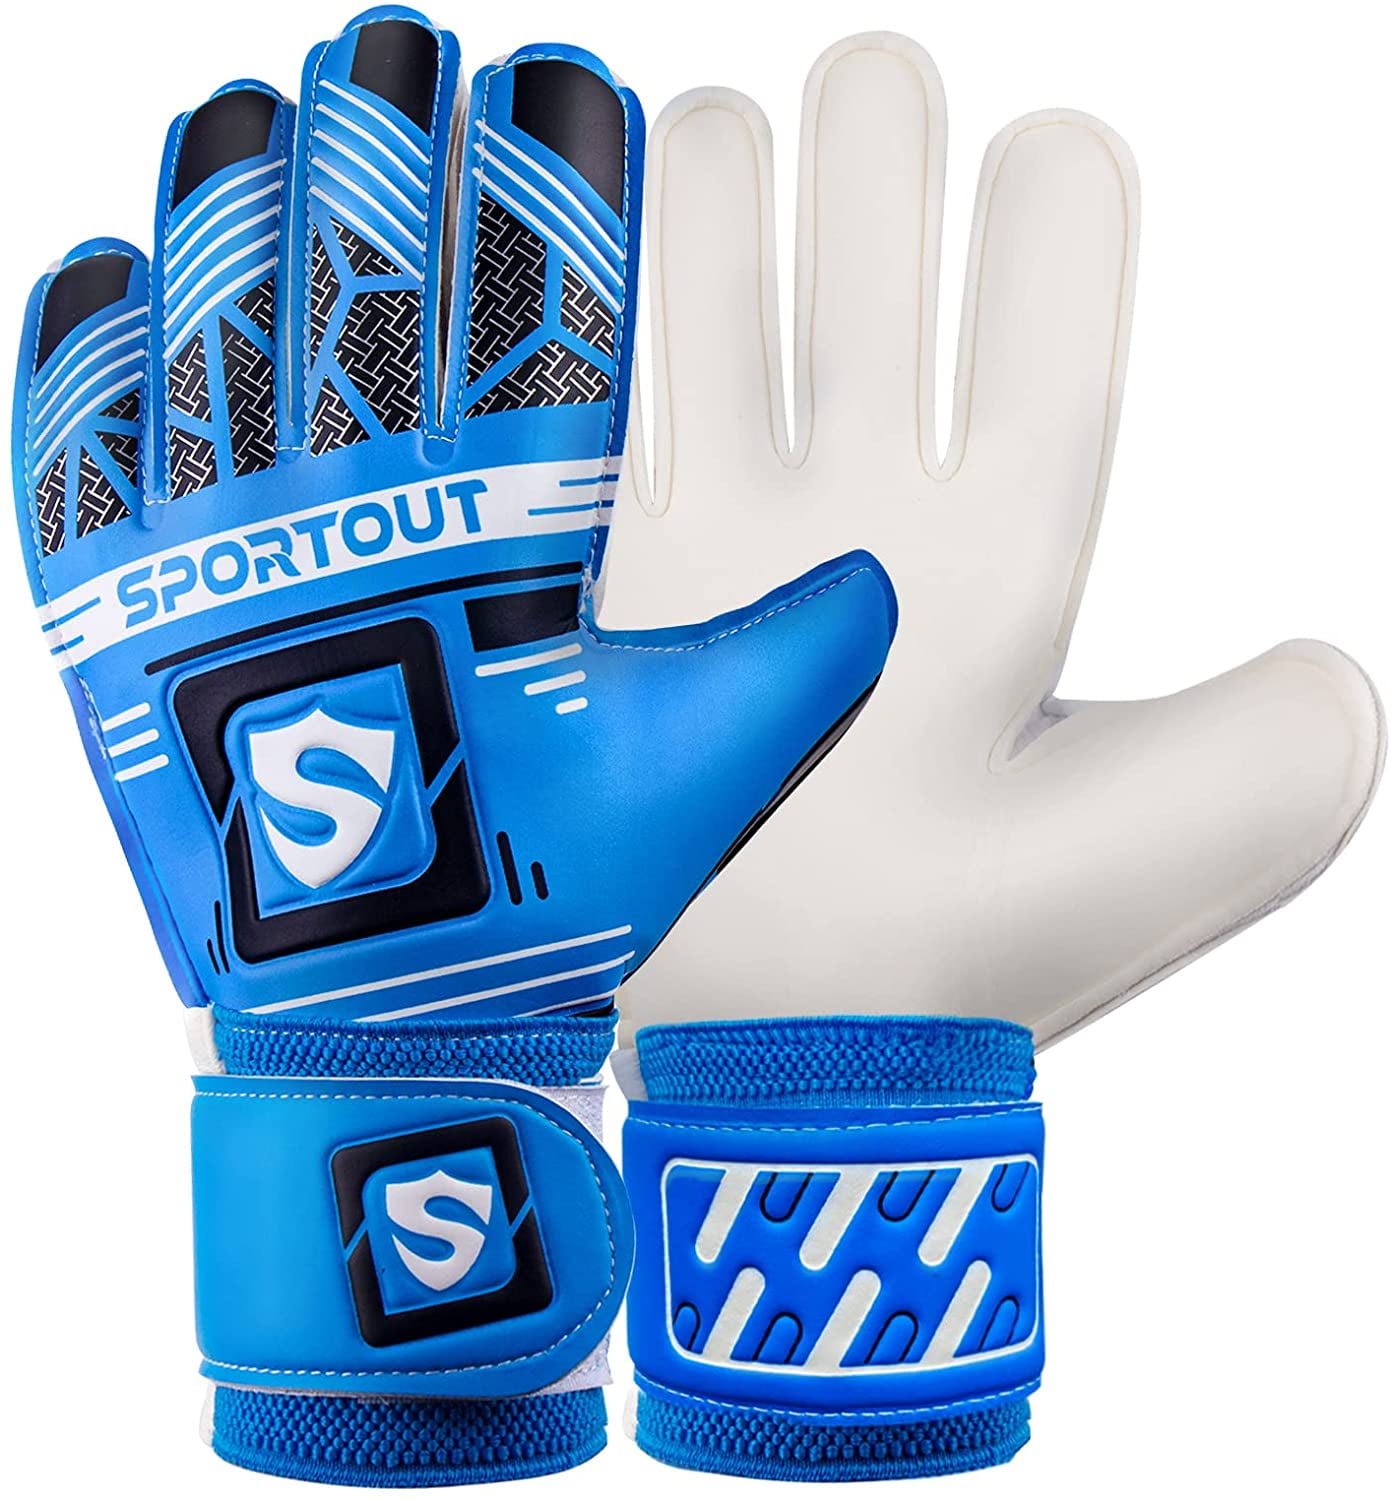 11 Splay Gloves football goalkeeper goal keeping fingersaves roll finger spine 